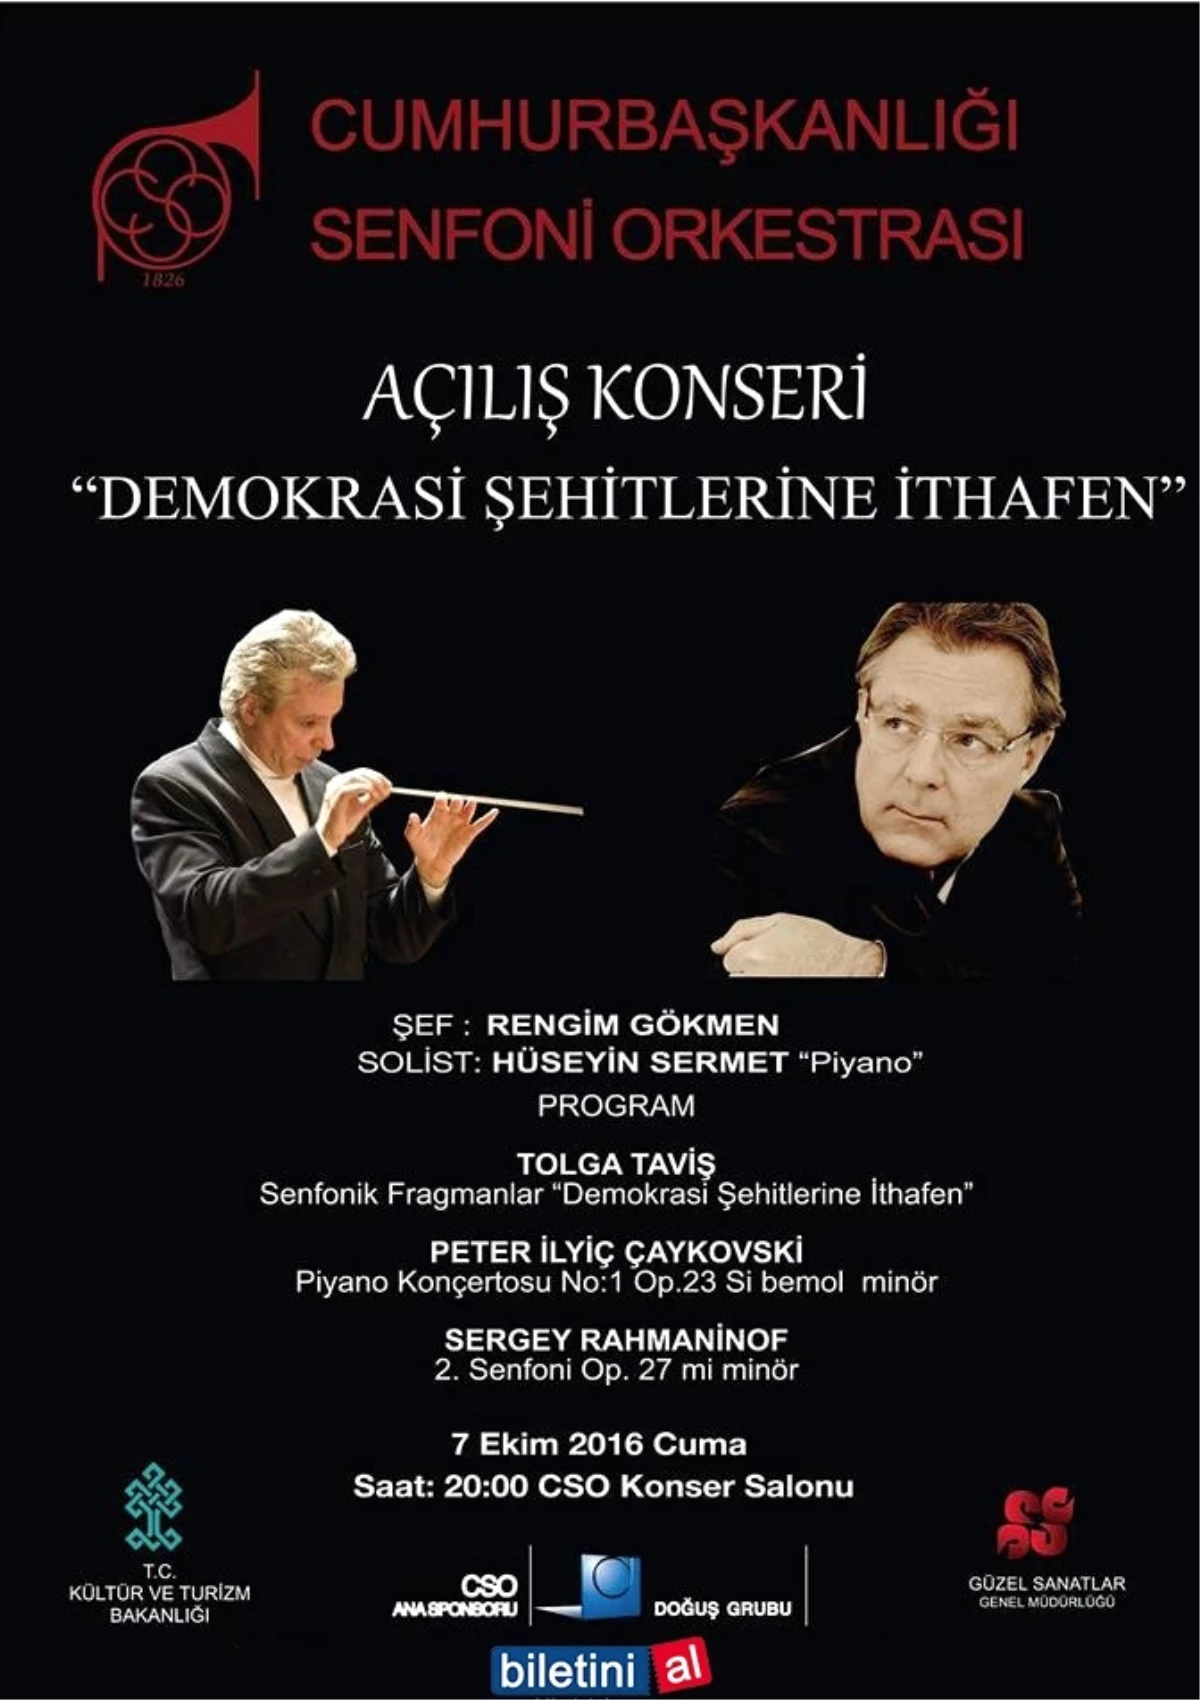 C.s.o. - Açılış Konseri "Demokrasi Şehitlerine İthafen"